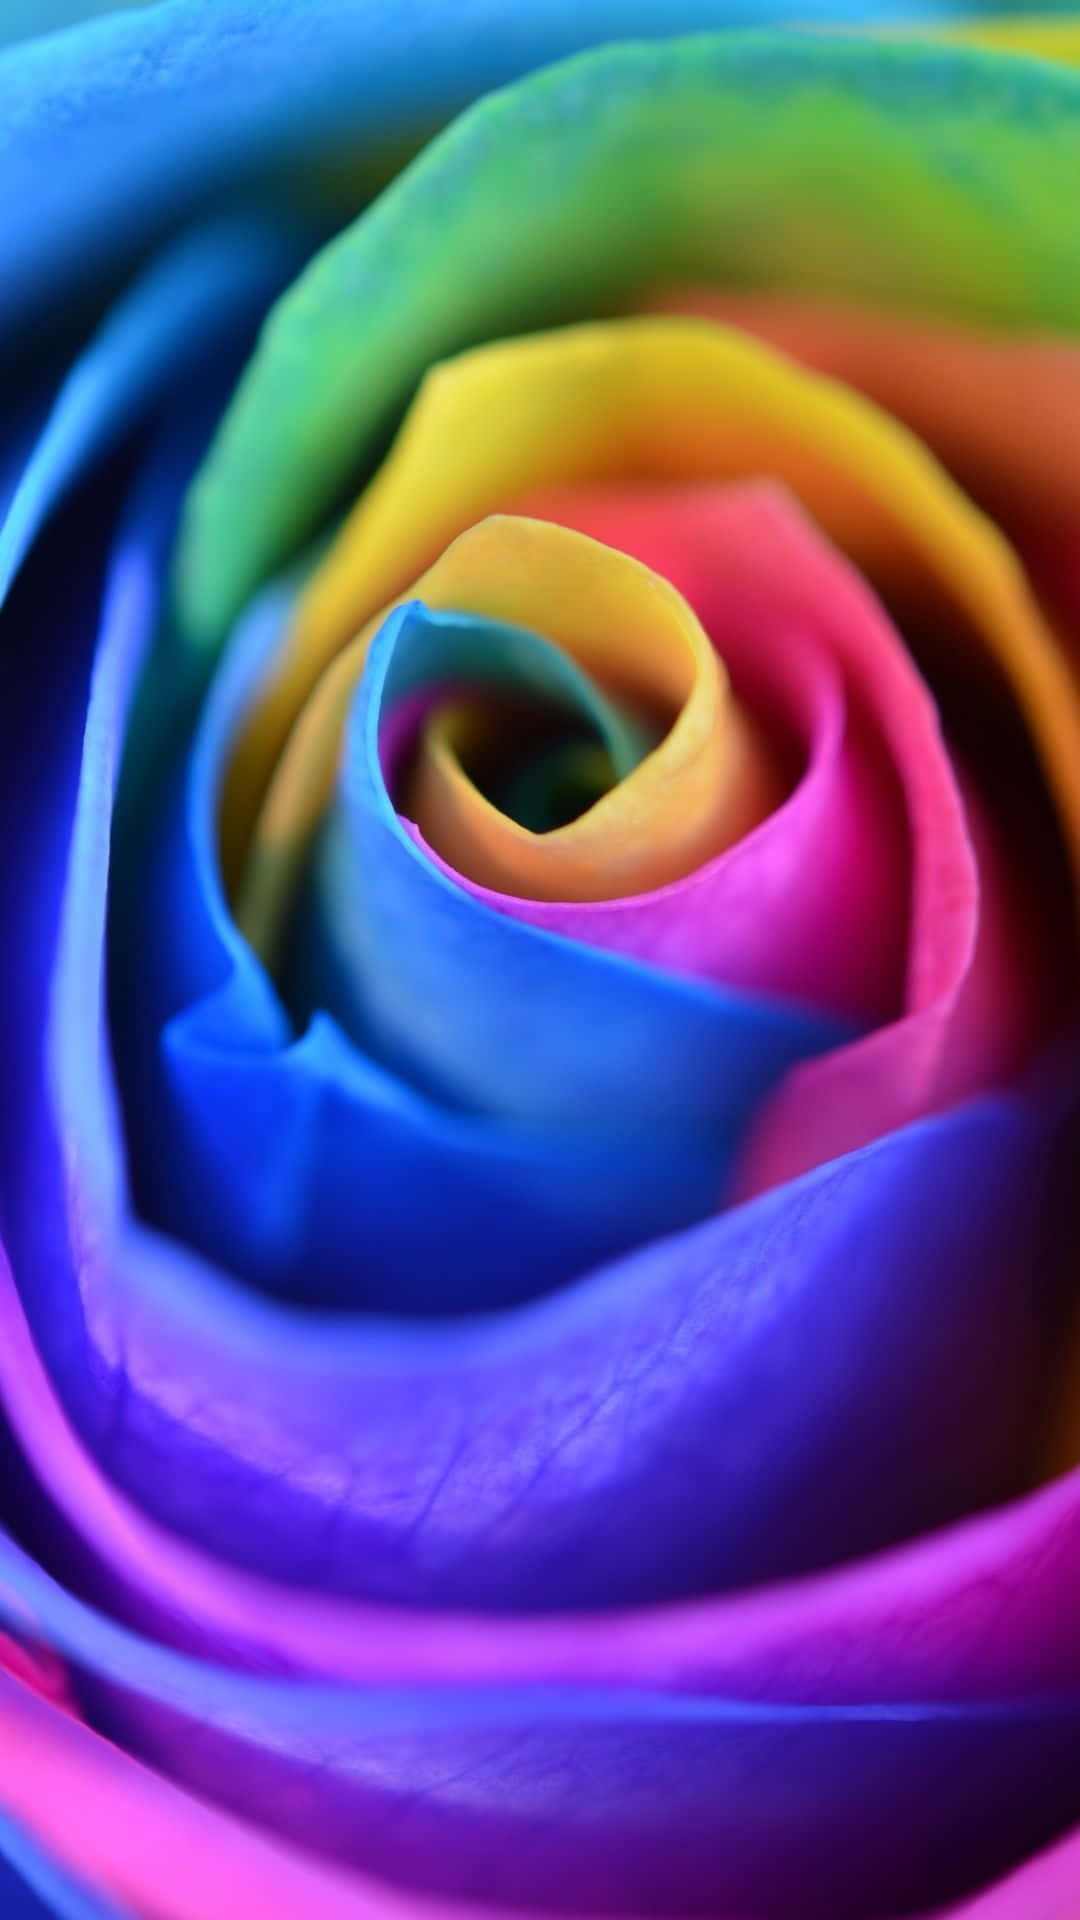 Tilføj et udbrud af farver til din smartphone med denne Rainbow Flower iPhone-tapet! Wallpaper